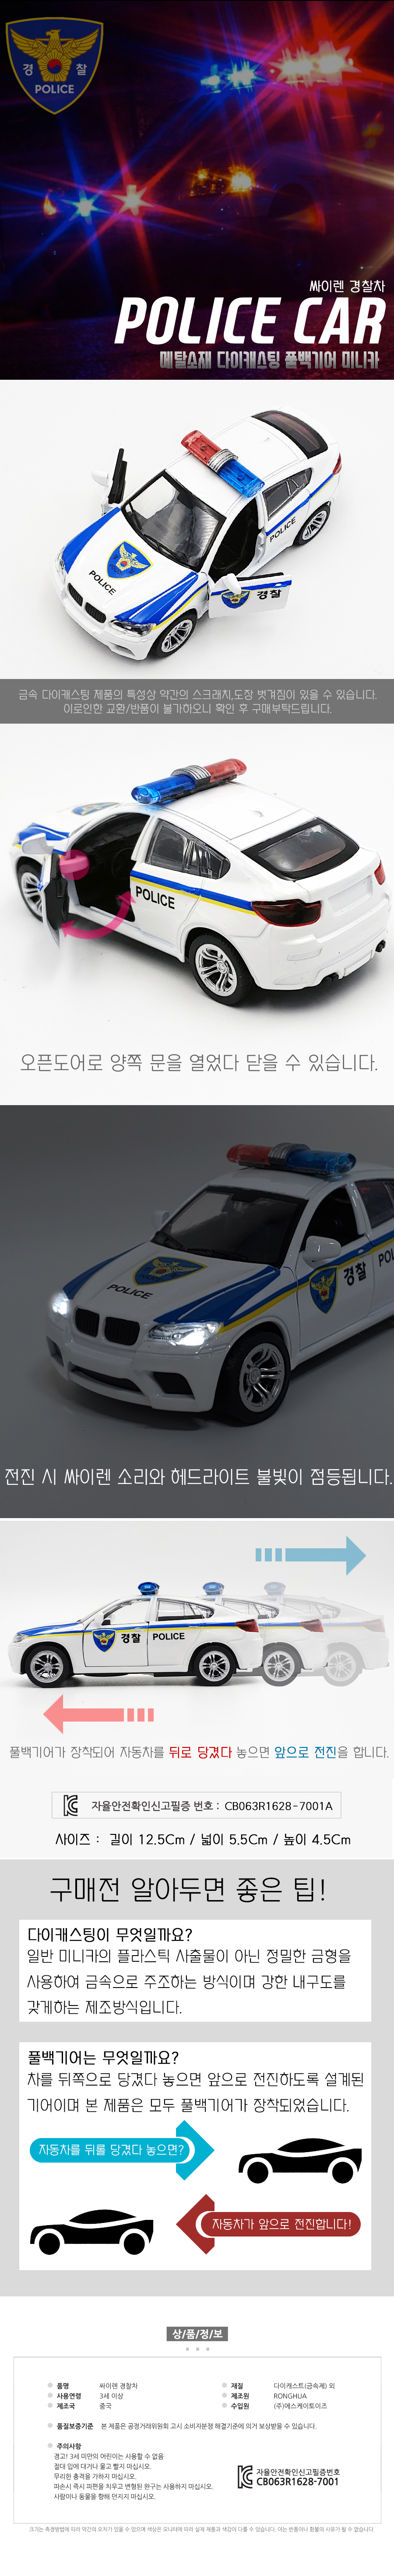 9000siren_policecar.jpg